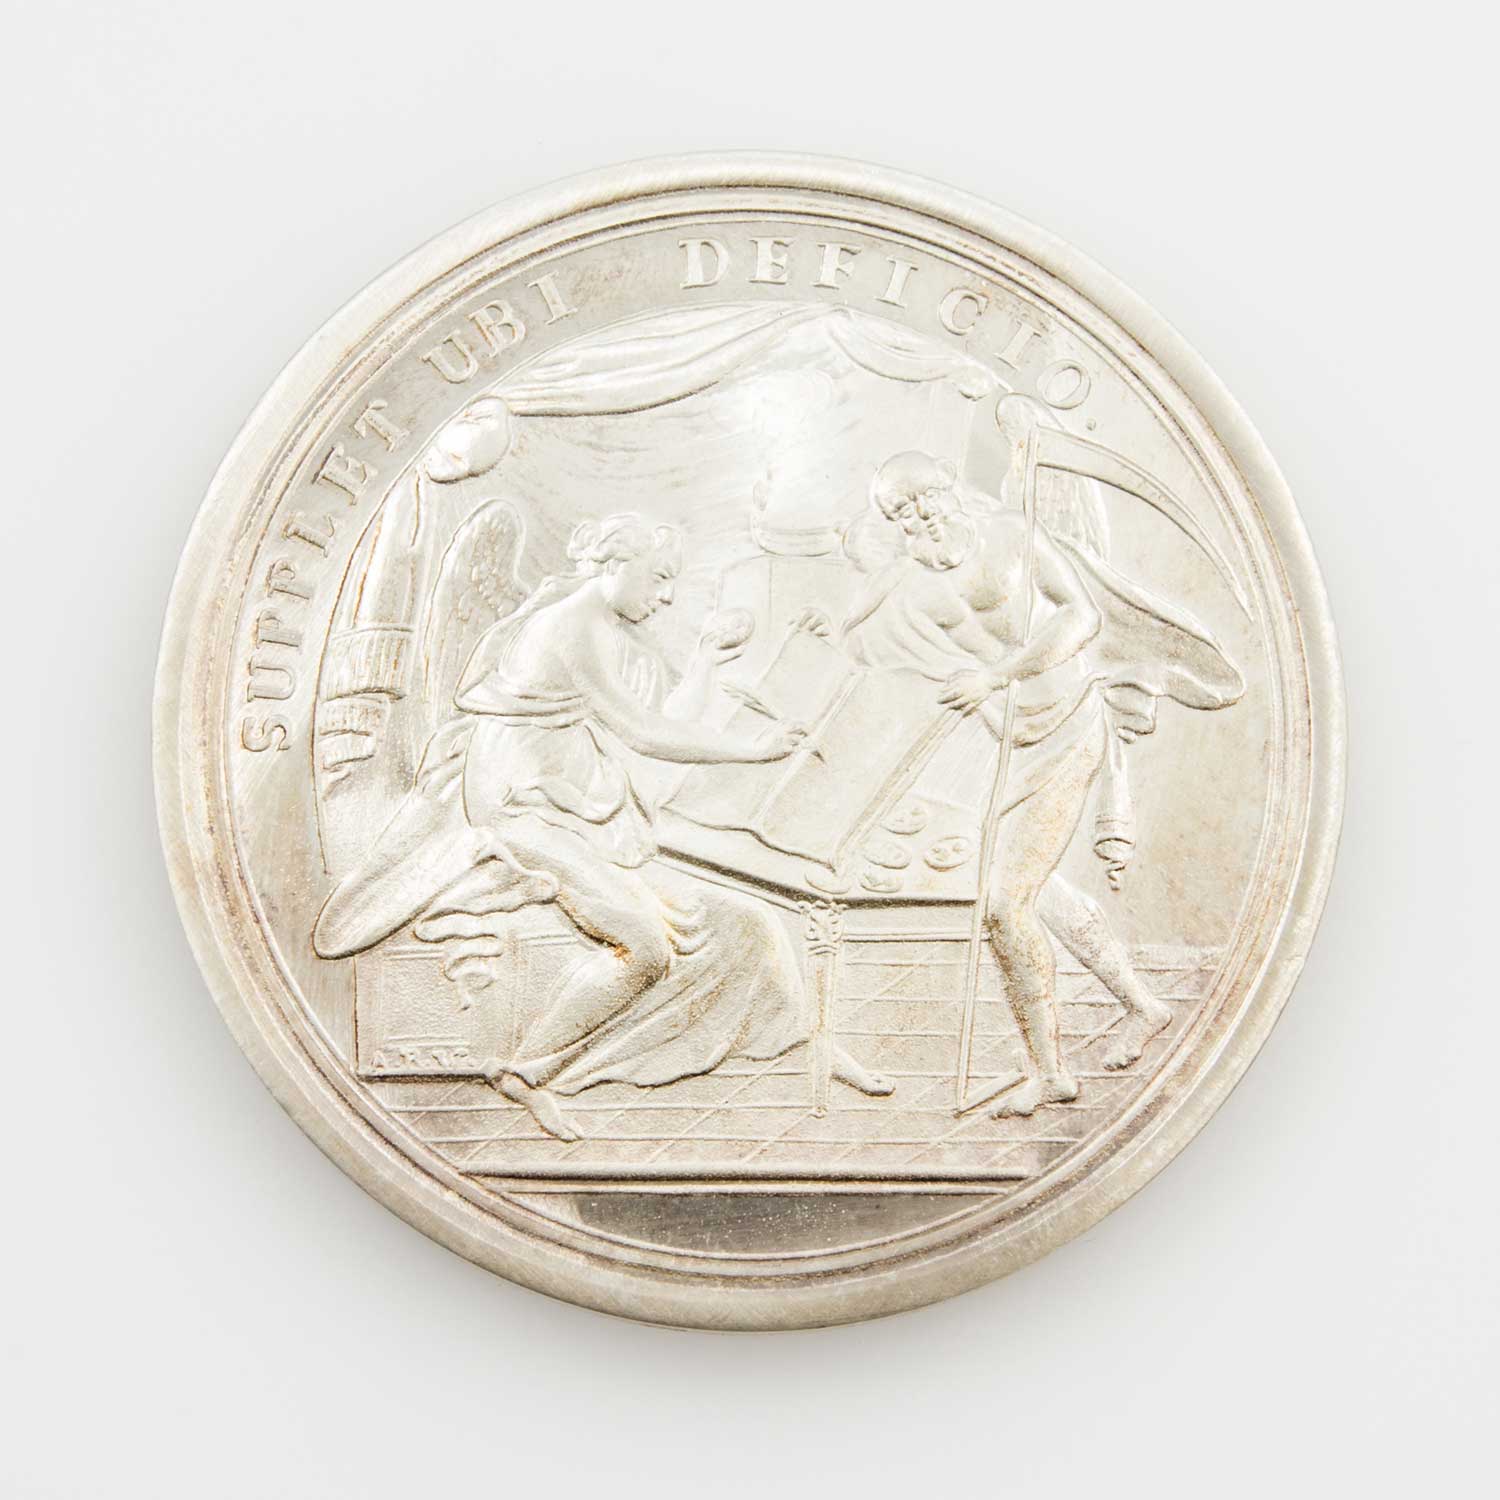 Württemberg - Münzbesuch Ag Medaille 1985, Gefälligkeitsmedaille anlässl. des Besuchs in der staatl.